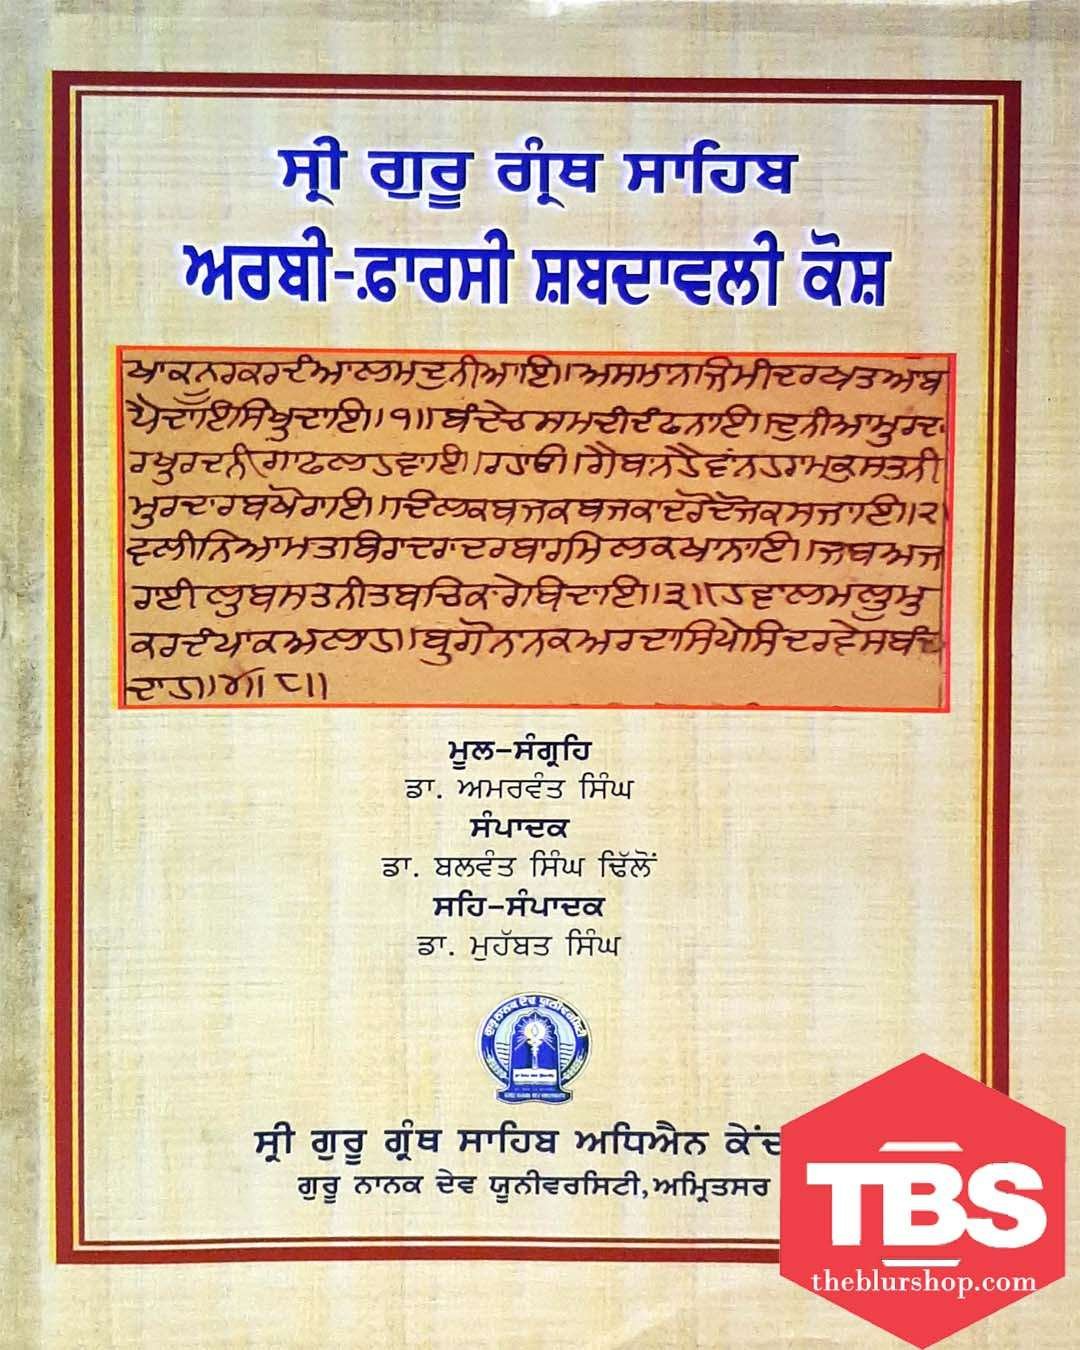 Sri Guru Granth Sahib: Arbi Farsi Shabadvali Kosh